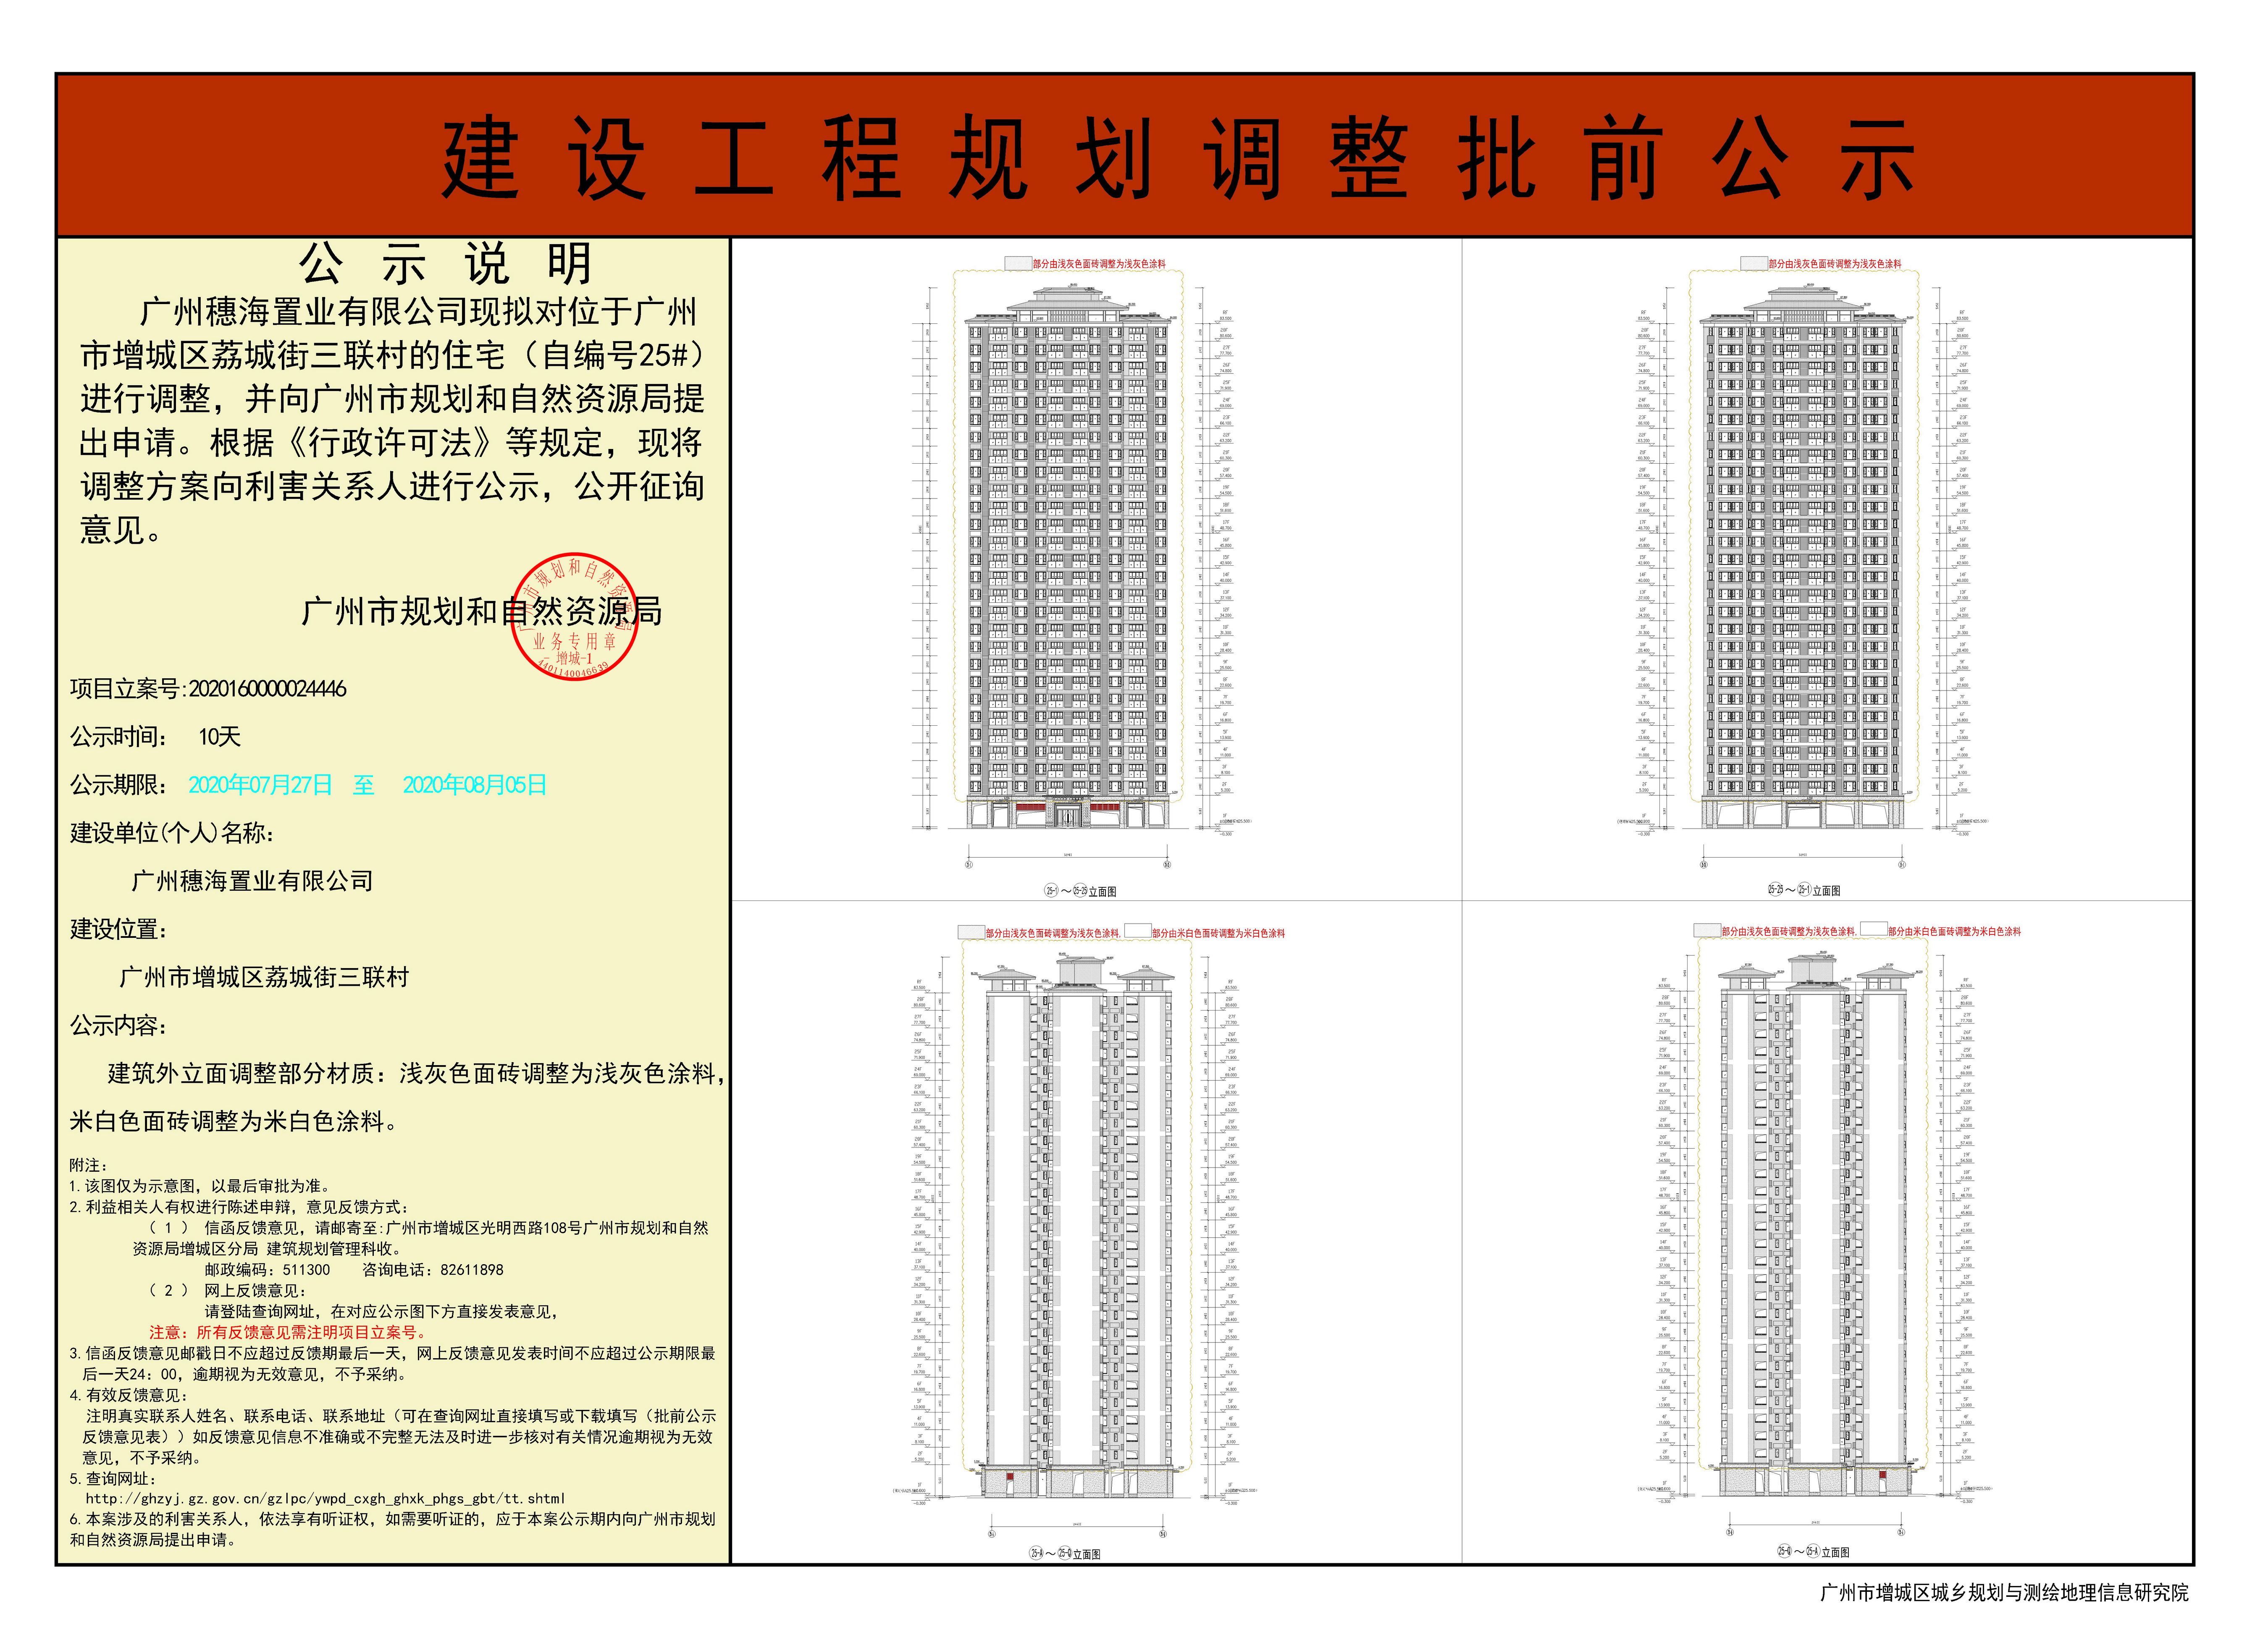 广州穗海置业有限公司 住宅（自编号25#） 调整建设工程规划许可证 批前公示.jpg